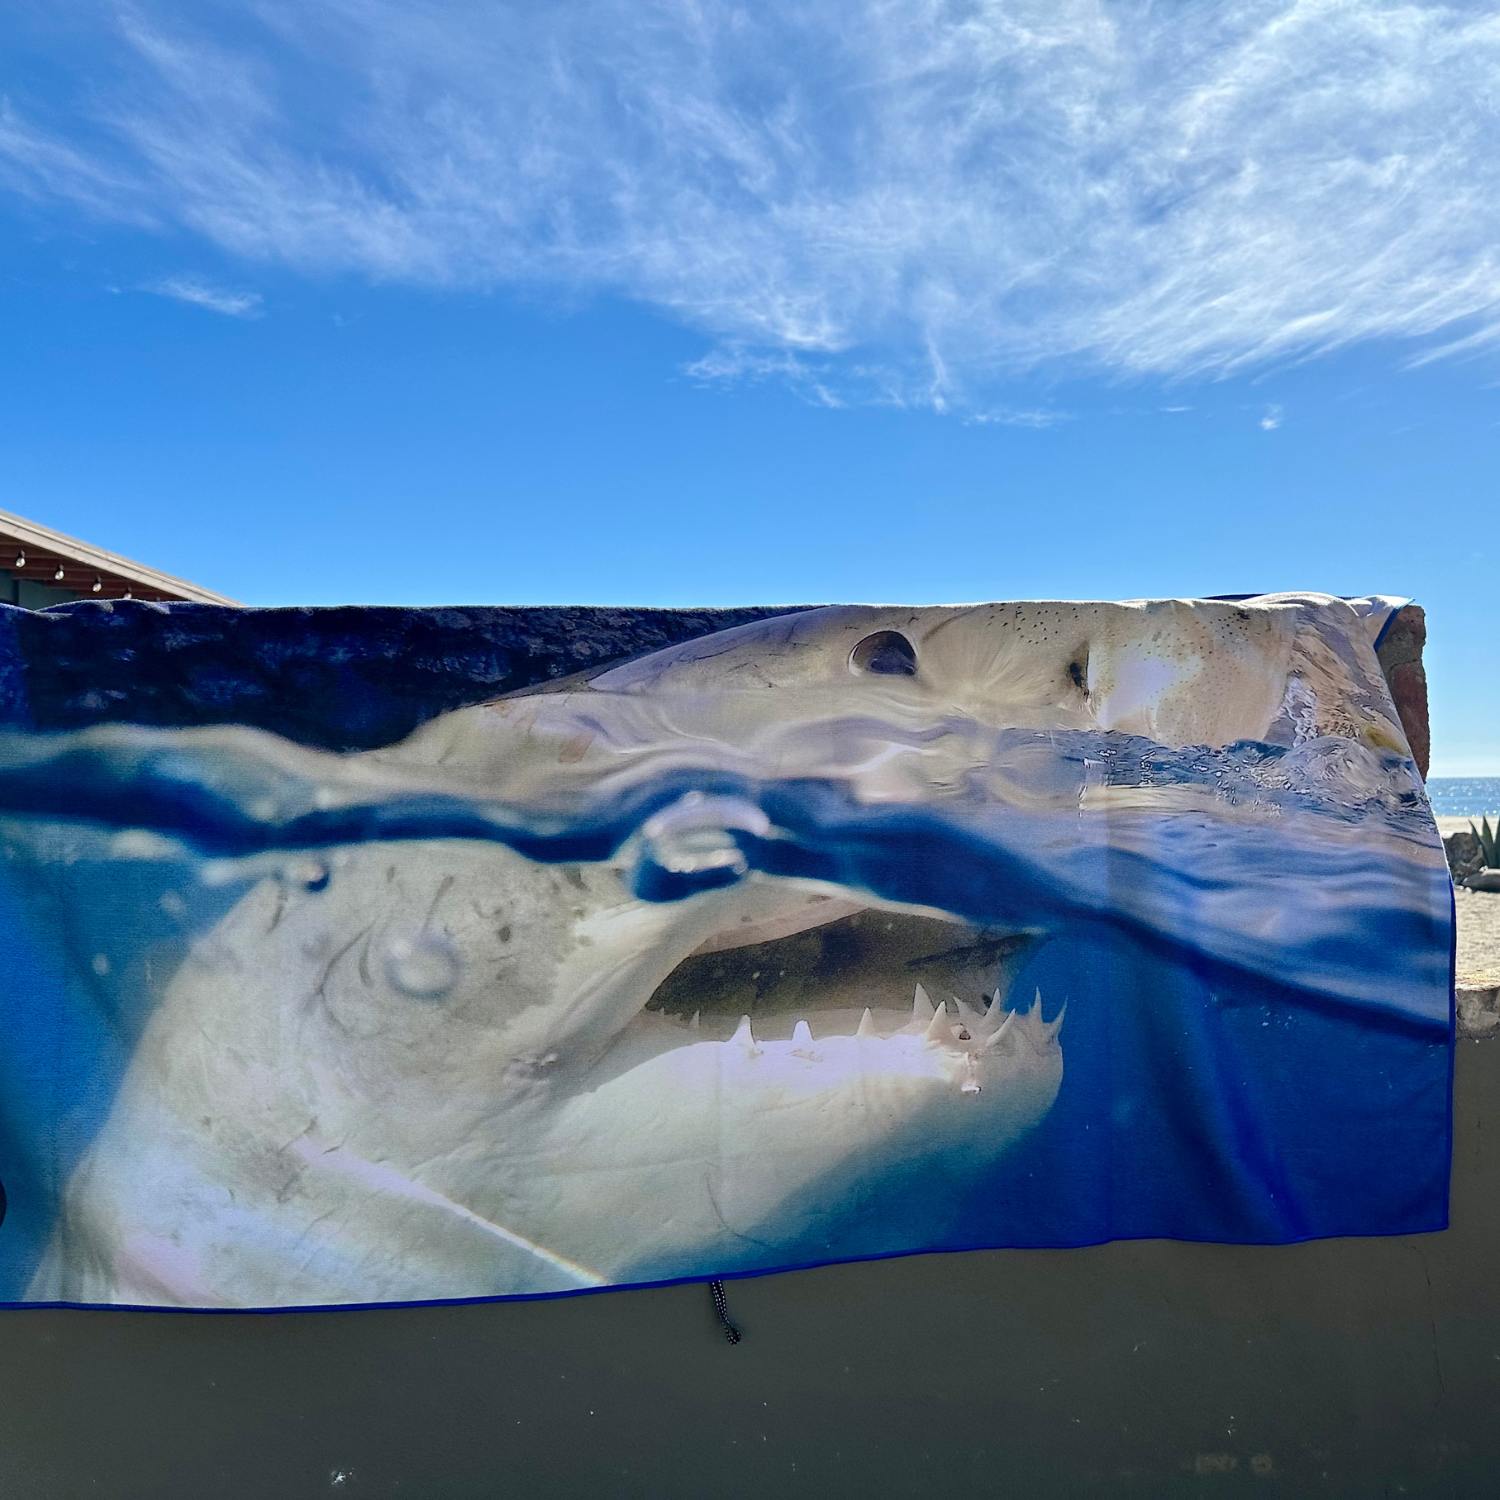 Shark towel padi gear